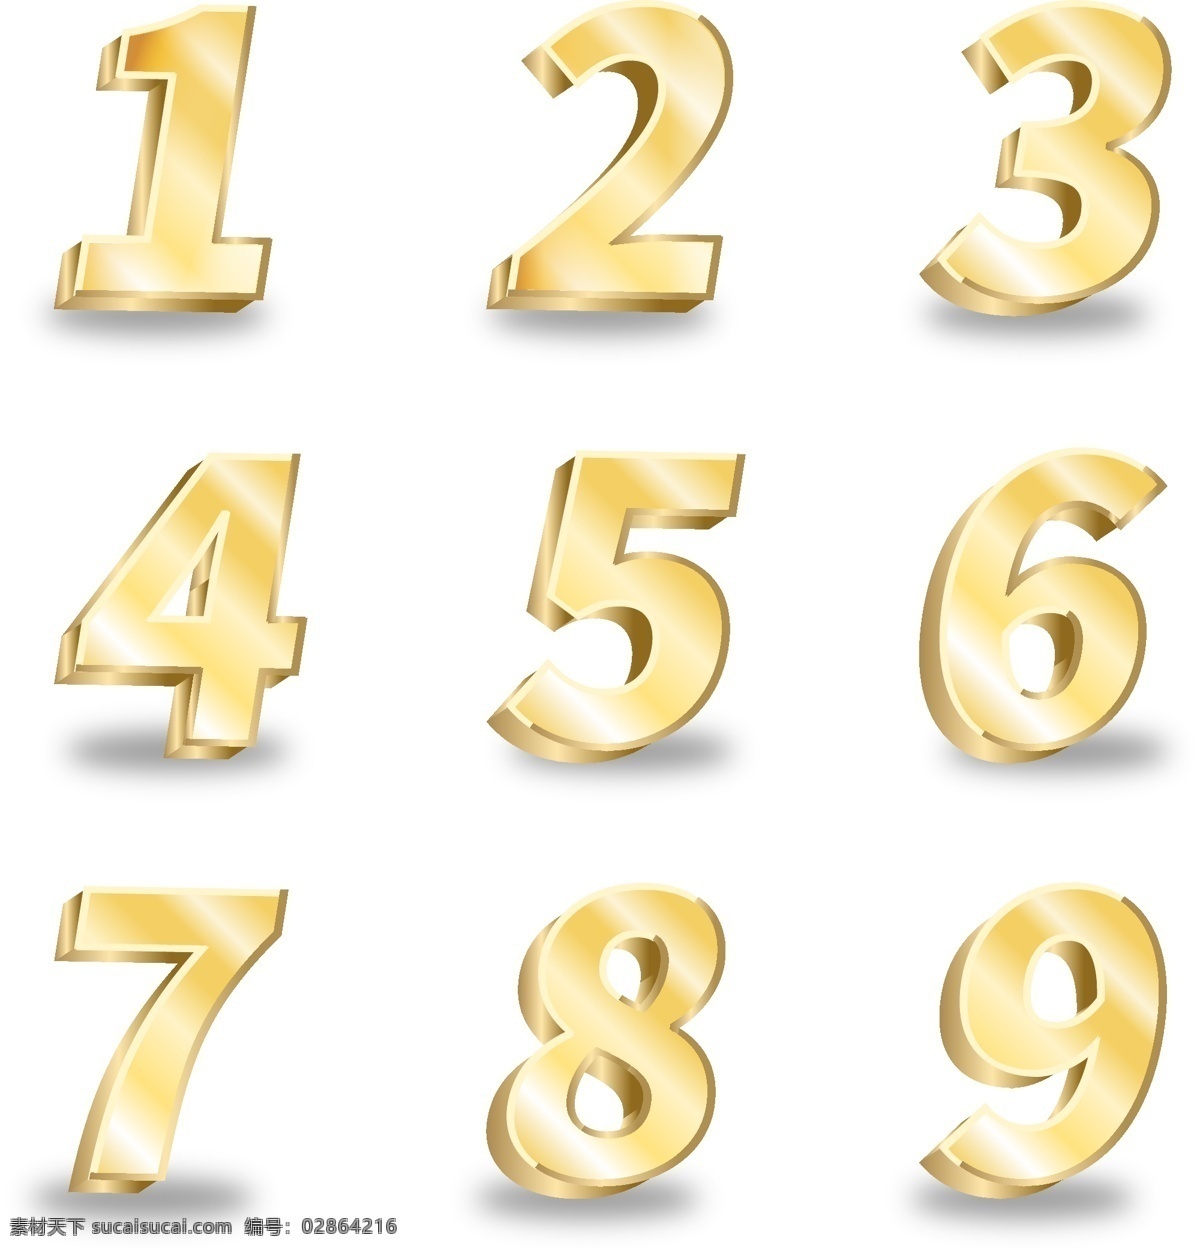 金属数字 彩色数字 数字 立体数字 数字设计 创意字体 艺术字 文字样式 字体效果 数字样式 紫色字体 数字0 数字1 数字2 数字3 数字4 数字5 数字6 数字7 数字8 数字9 周年庆 倒计时字体 阿拉伯数字 数字分层 卡通数字 设计数字 分层